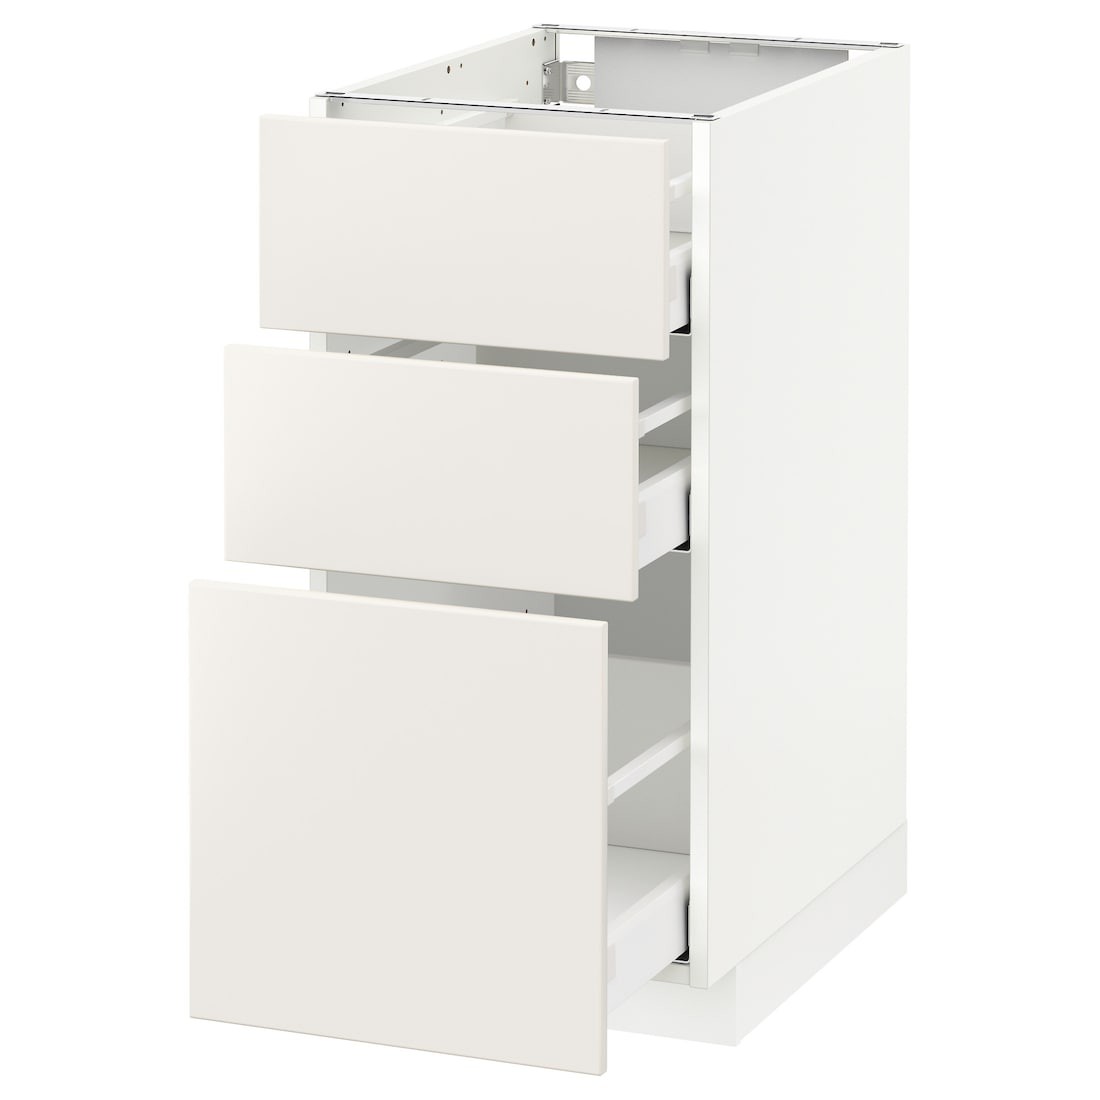 IKEA METOD МЕТОД / MAXIMERA МАКСИМЕРА Напольный шкаф с 3 ящиками, белый / Veddinge белый, 40x60 см 29049628 290.496.28